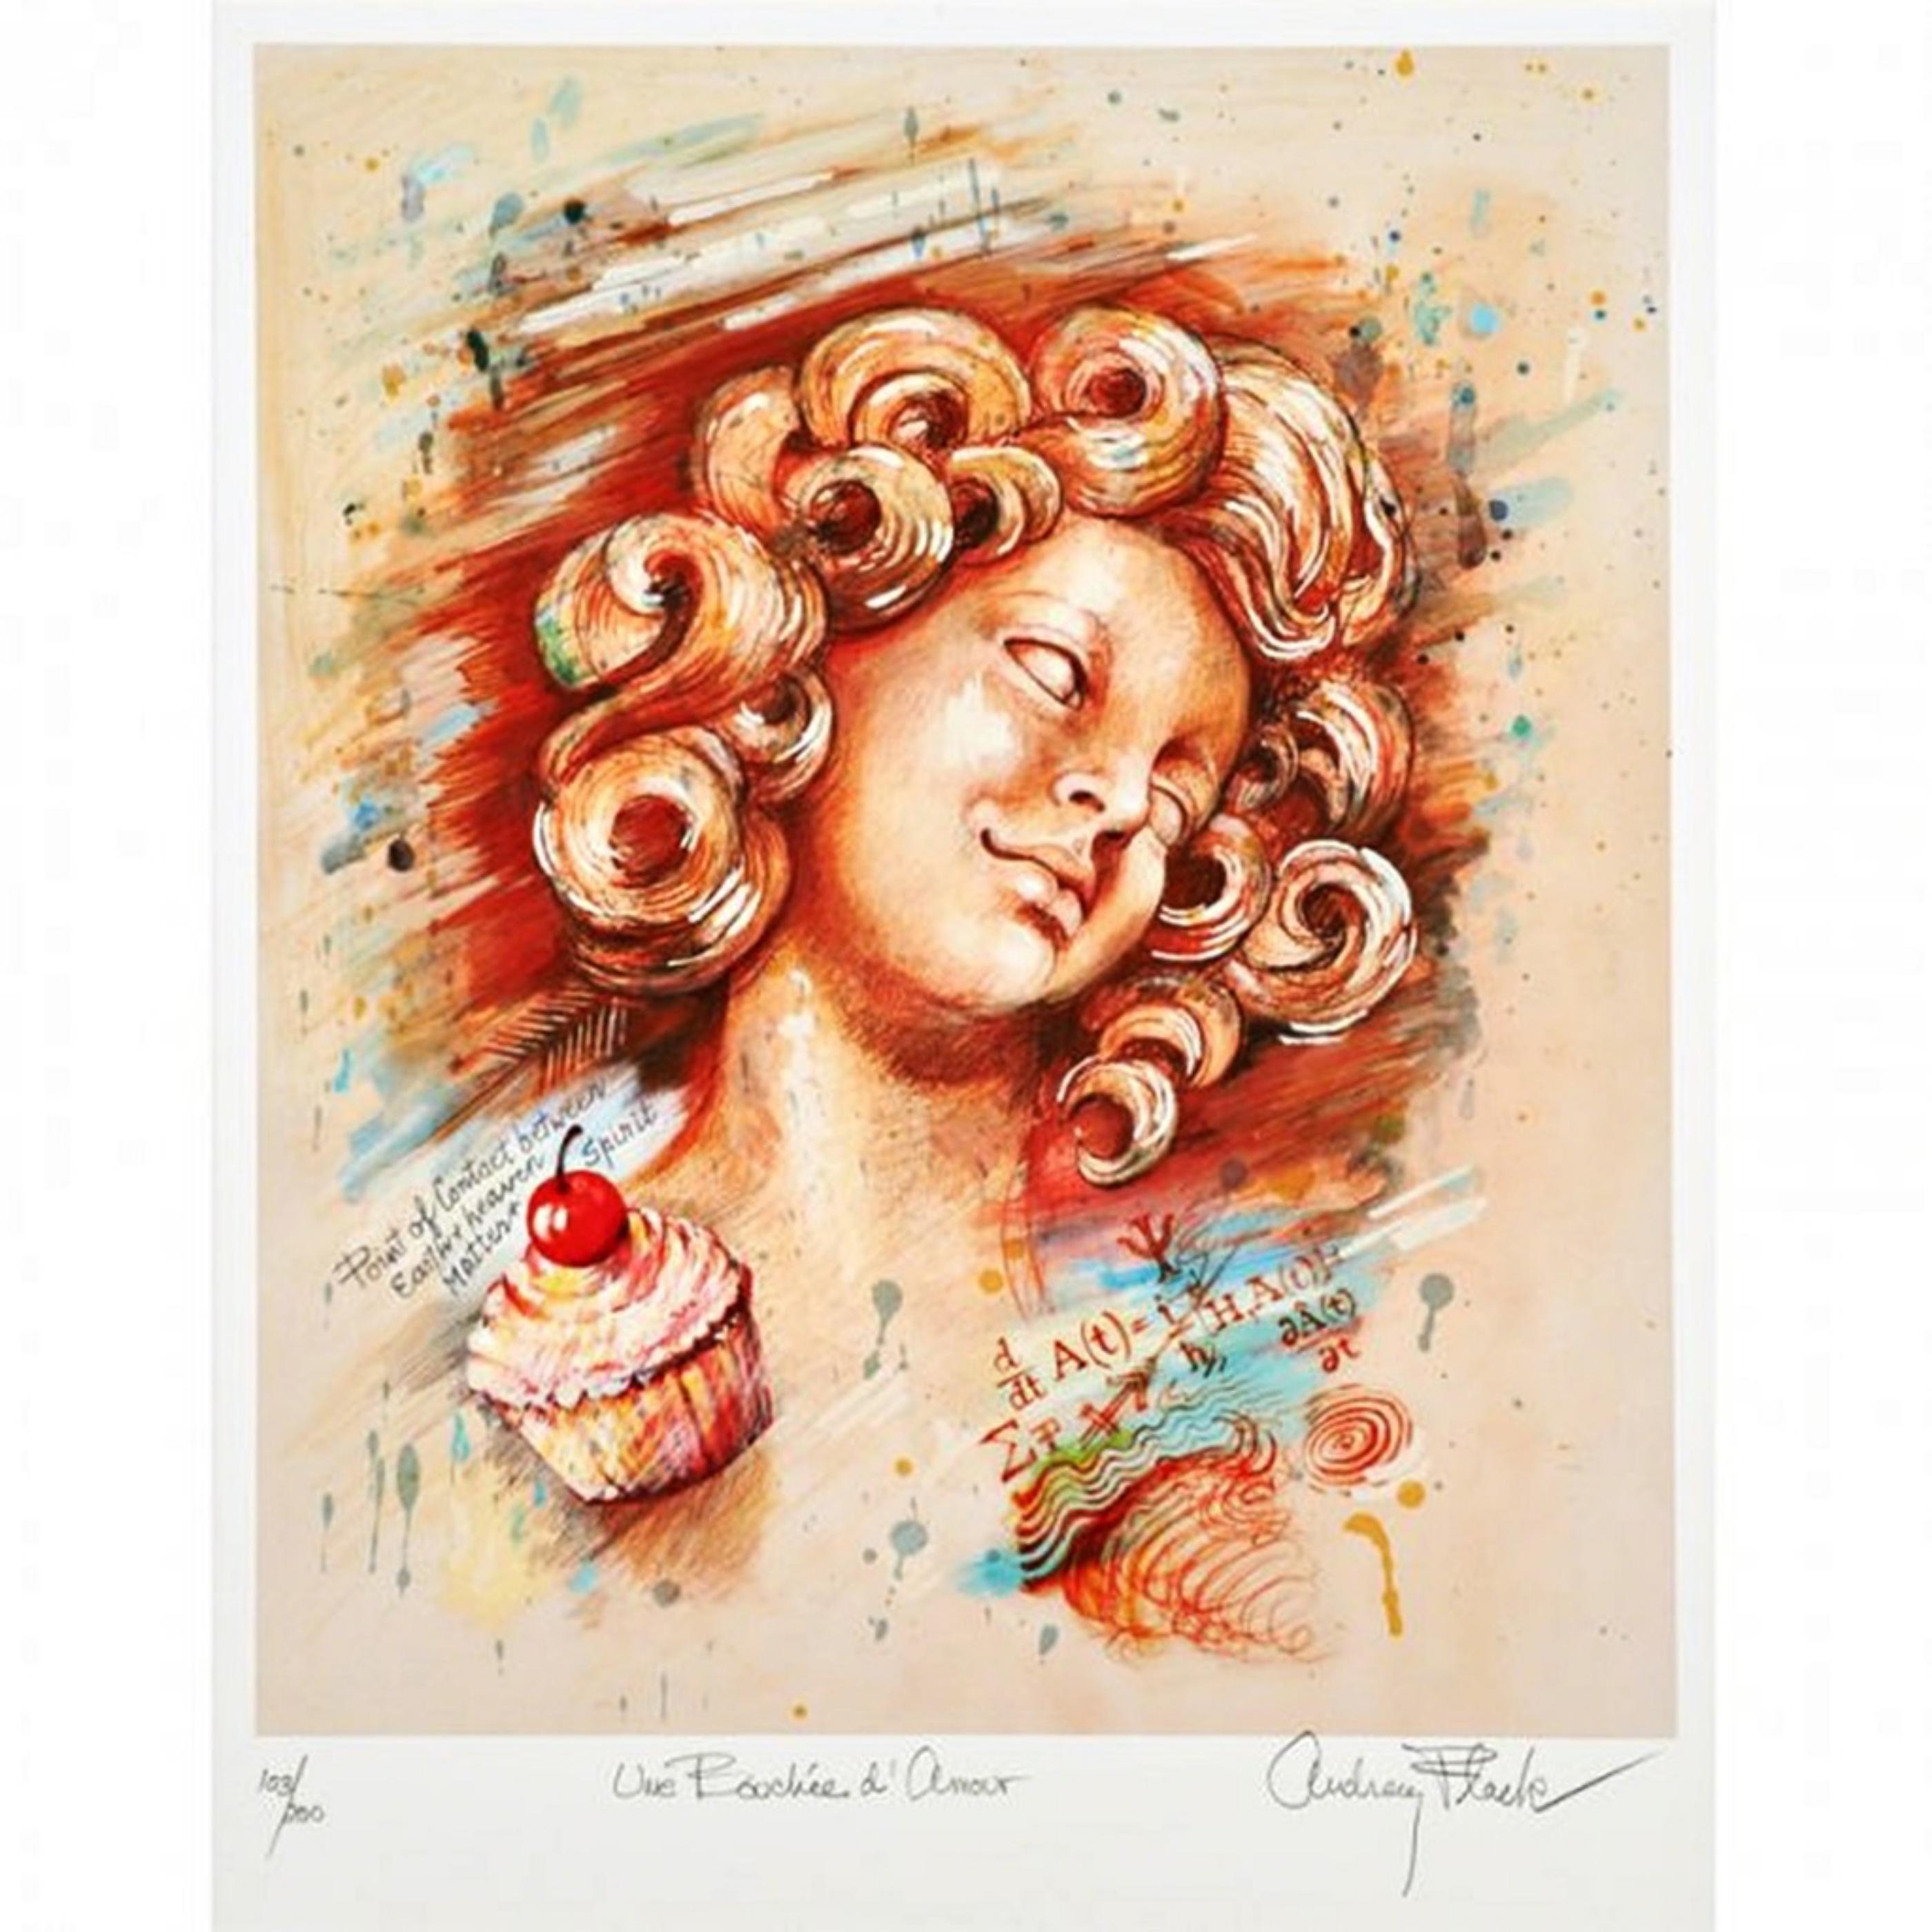 Une Bouchee D'Amour (signierter Präsentationsdruck einer weiblichen fotorealistischen Künstlerin)  – Print von Audrey Flack